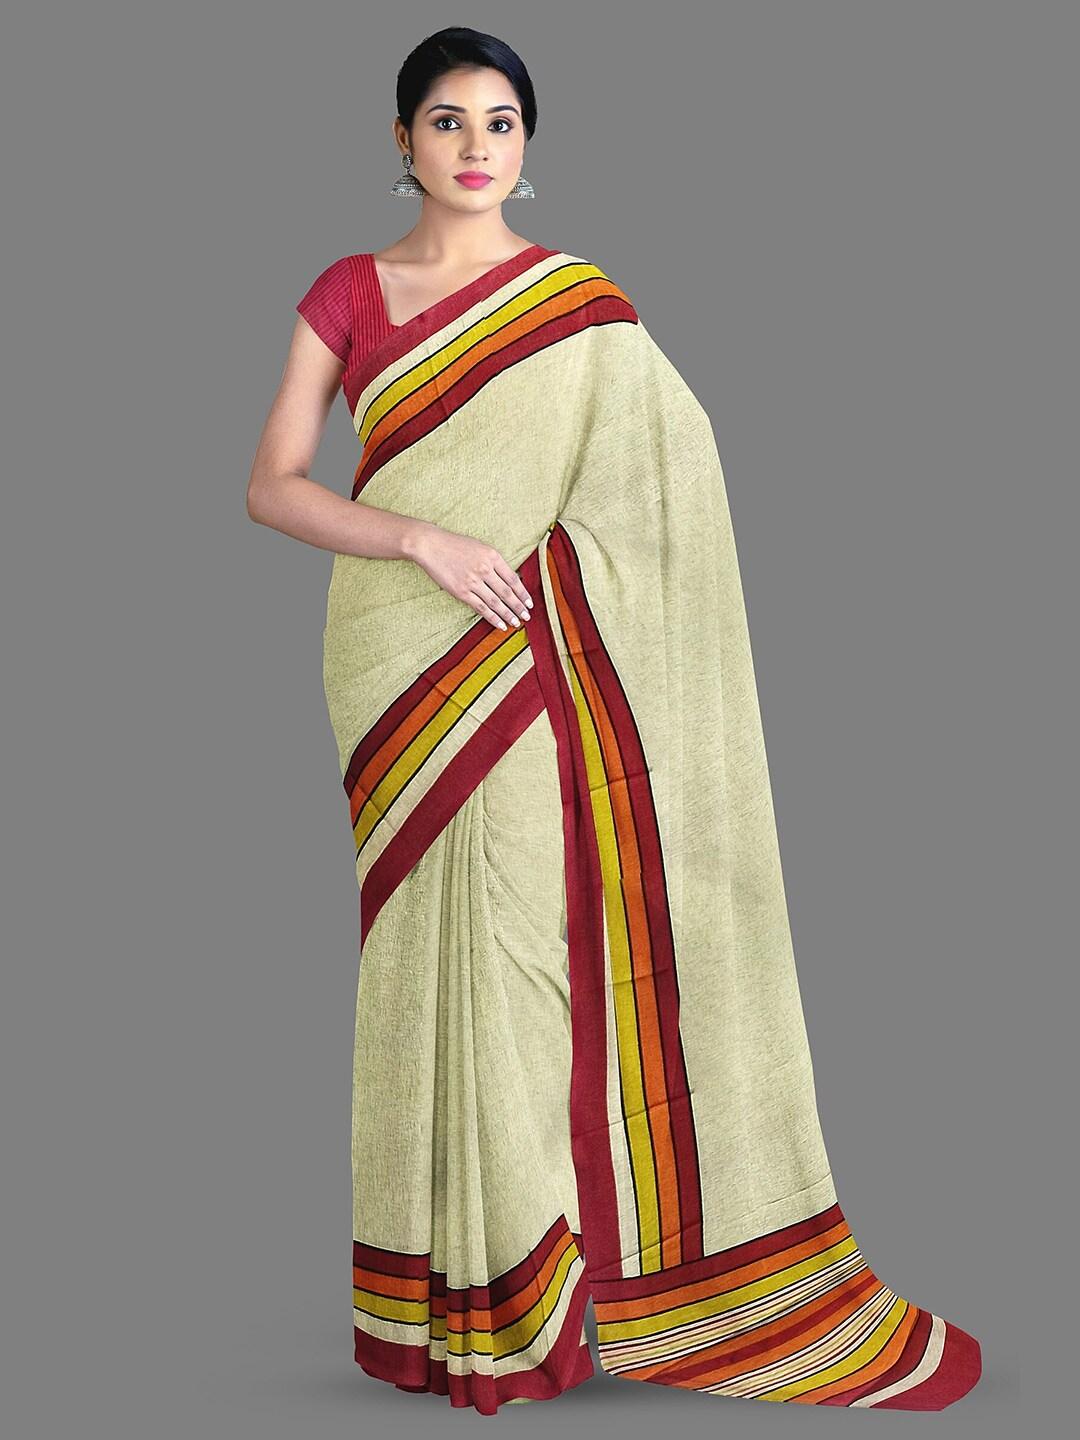 The Chennai Silks Striped Printed Saree